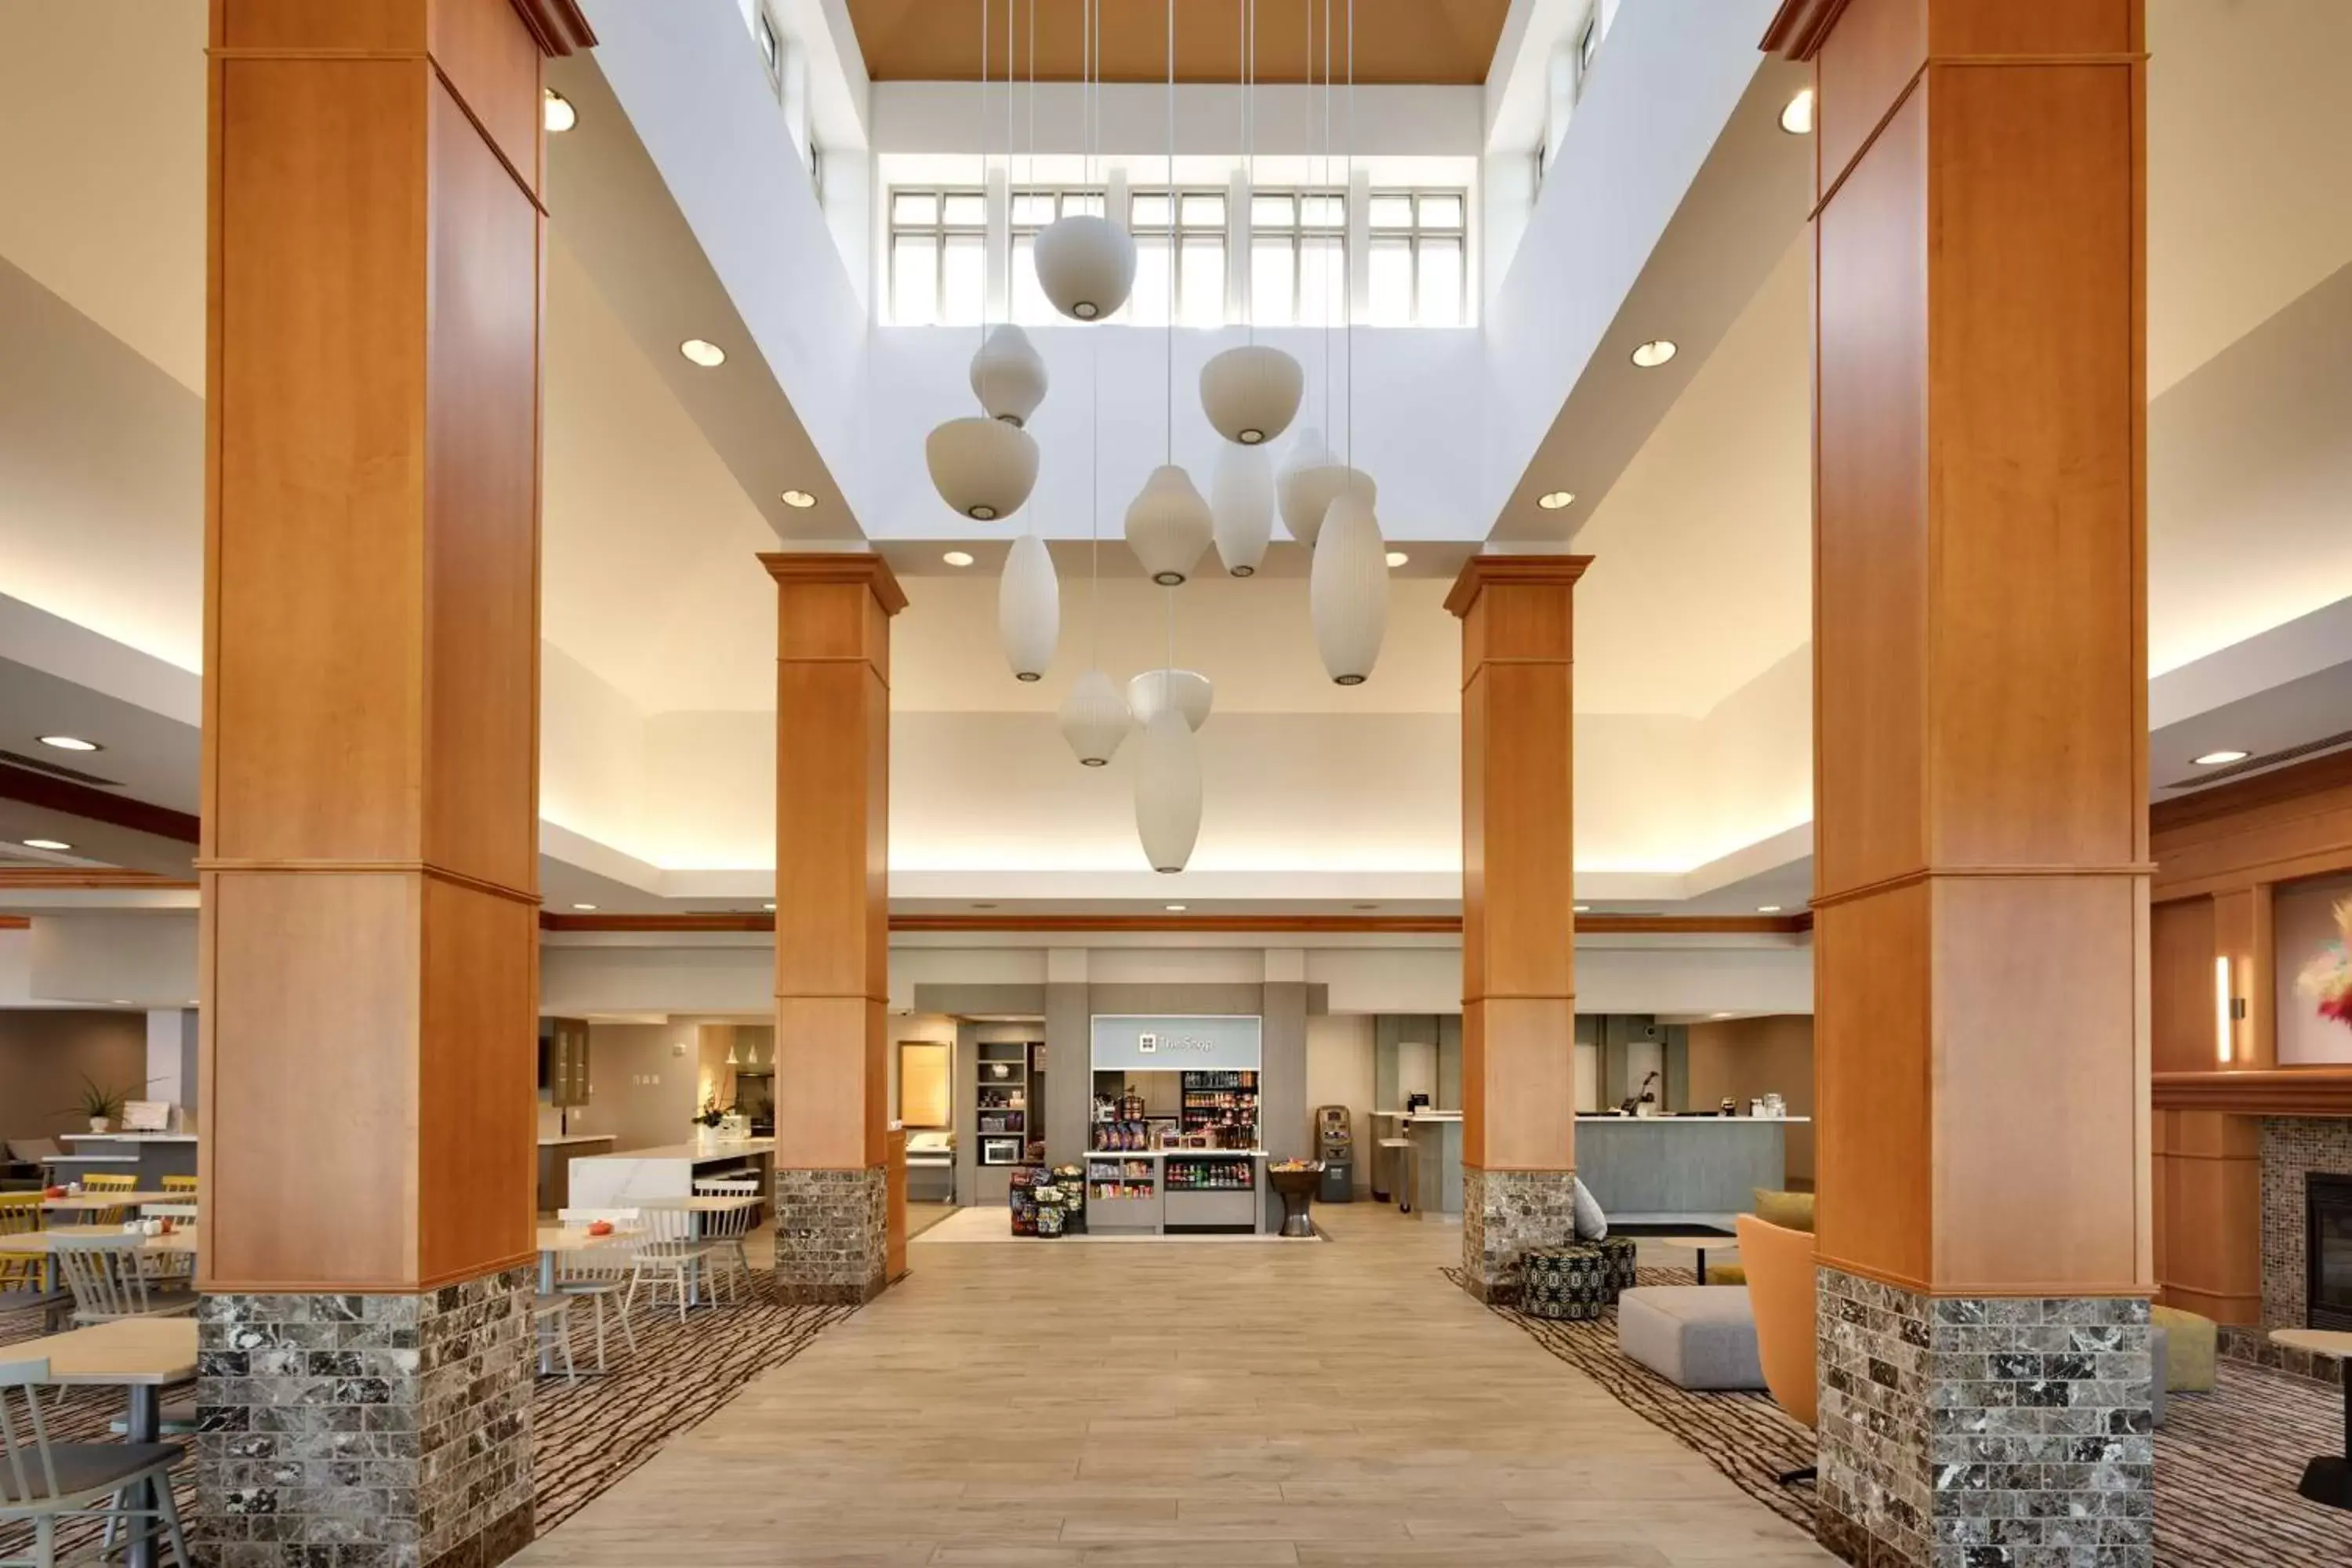 Lobby or reception, Lobby/Reception in Hilton Garden Inn Salt Lake City/Sandy